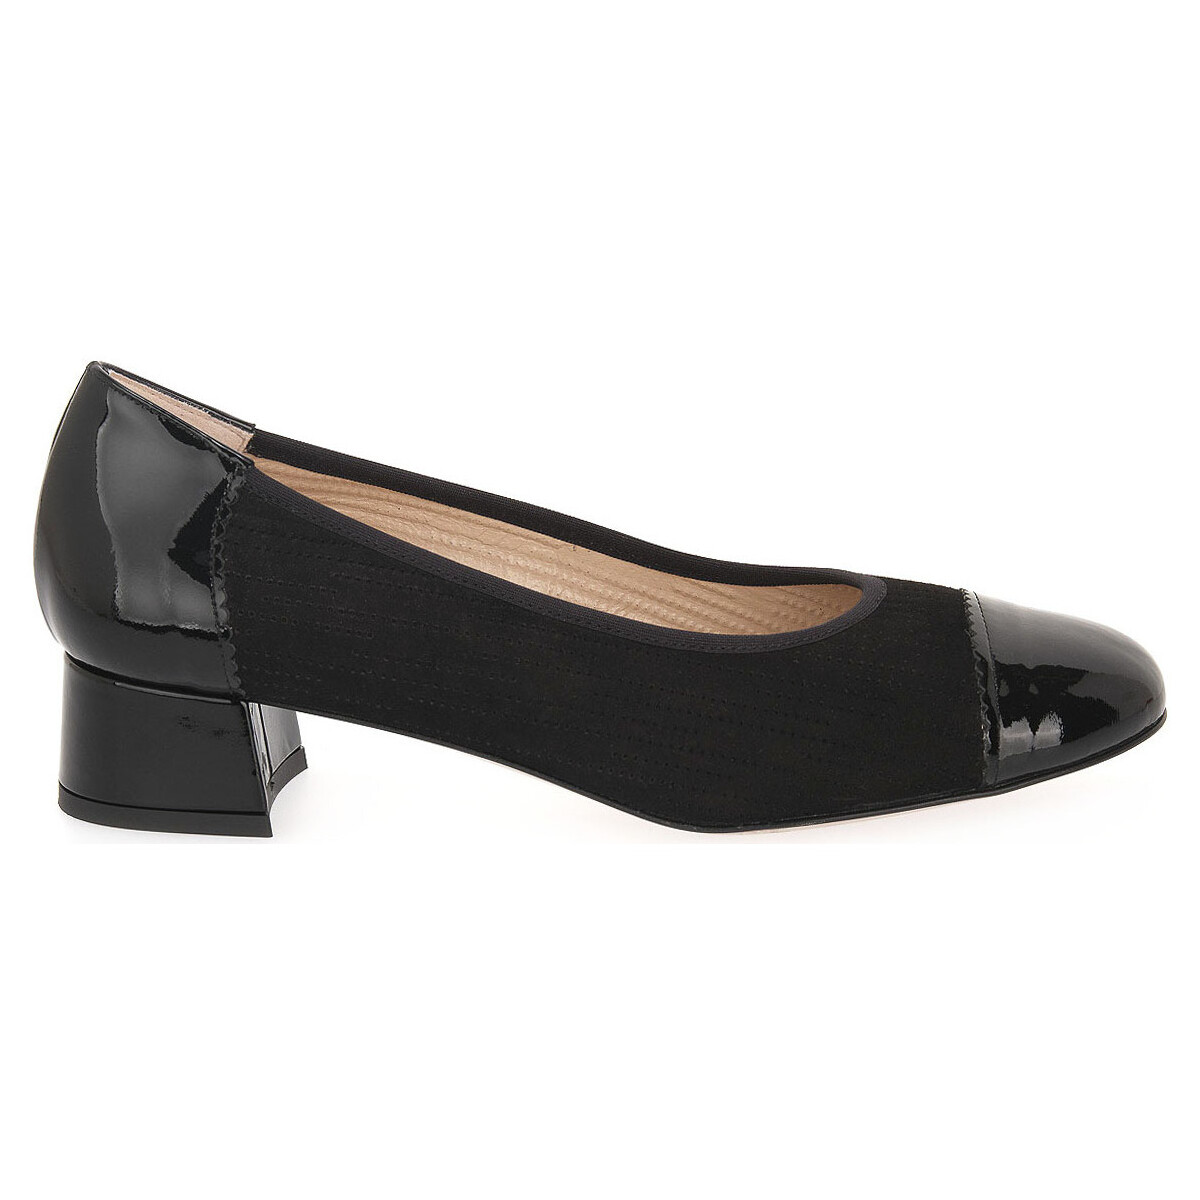 Chaussures Femme Escarpins Confort IRIS VERNICE Noir